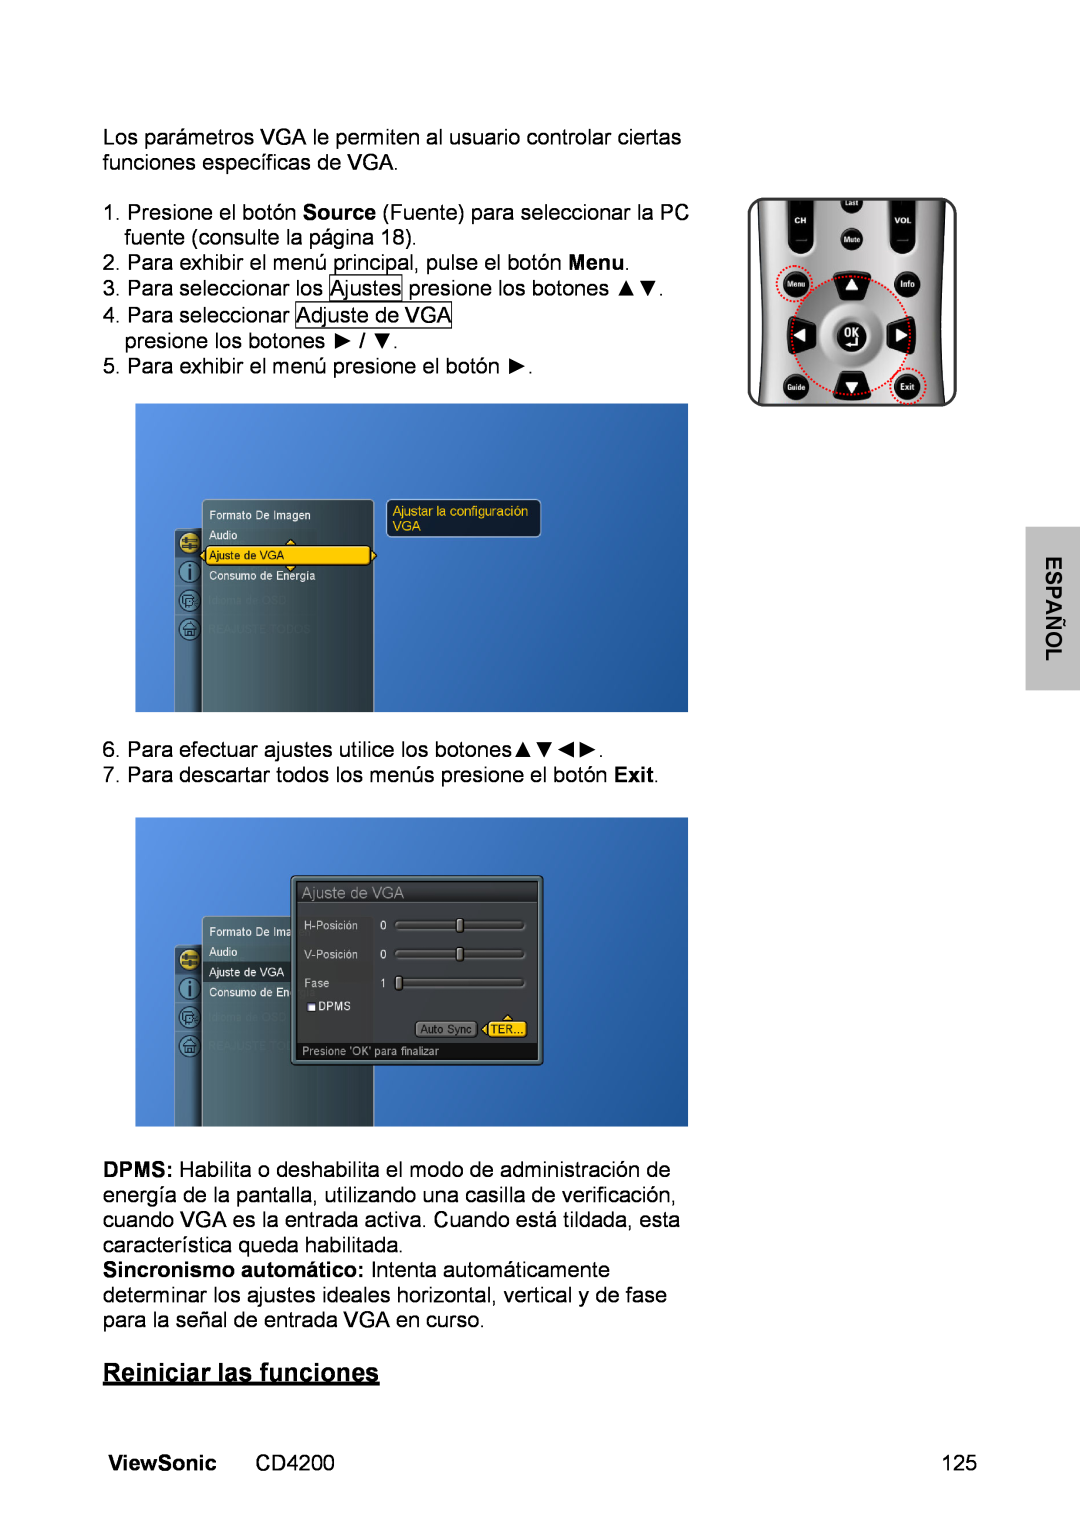 ViewSonic manual Reiniciar las funciones, Español, ViewSonic CD4200 